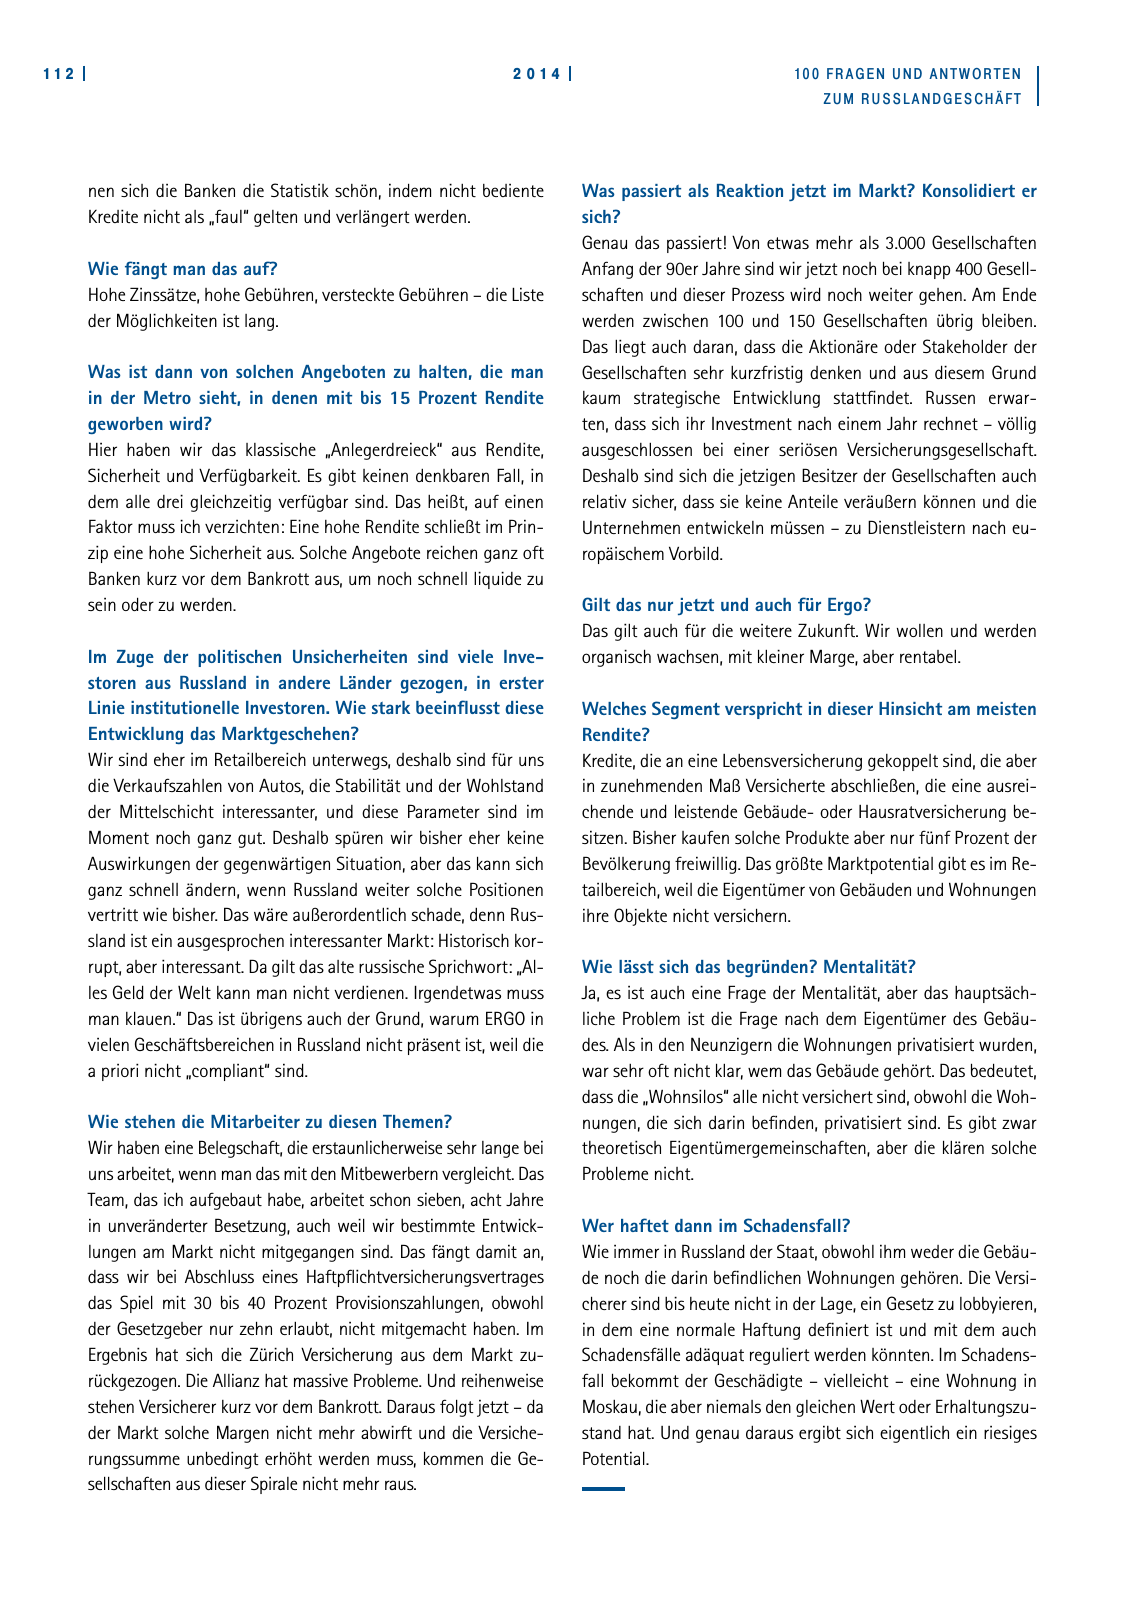 Vorschau AHK 100 Fragen 2014 Seite 114